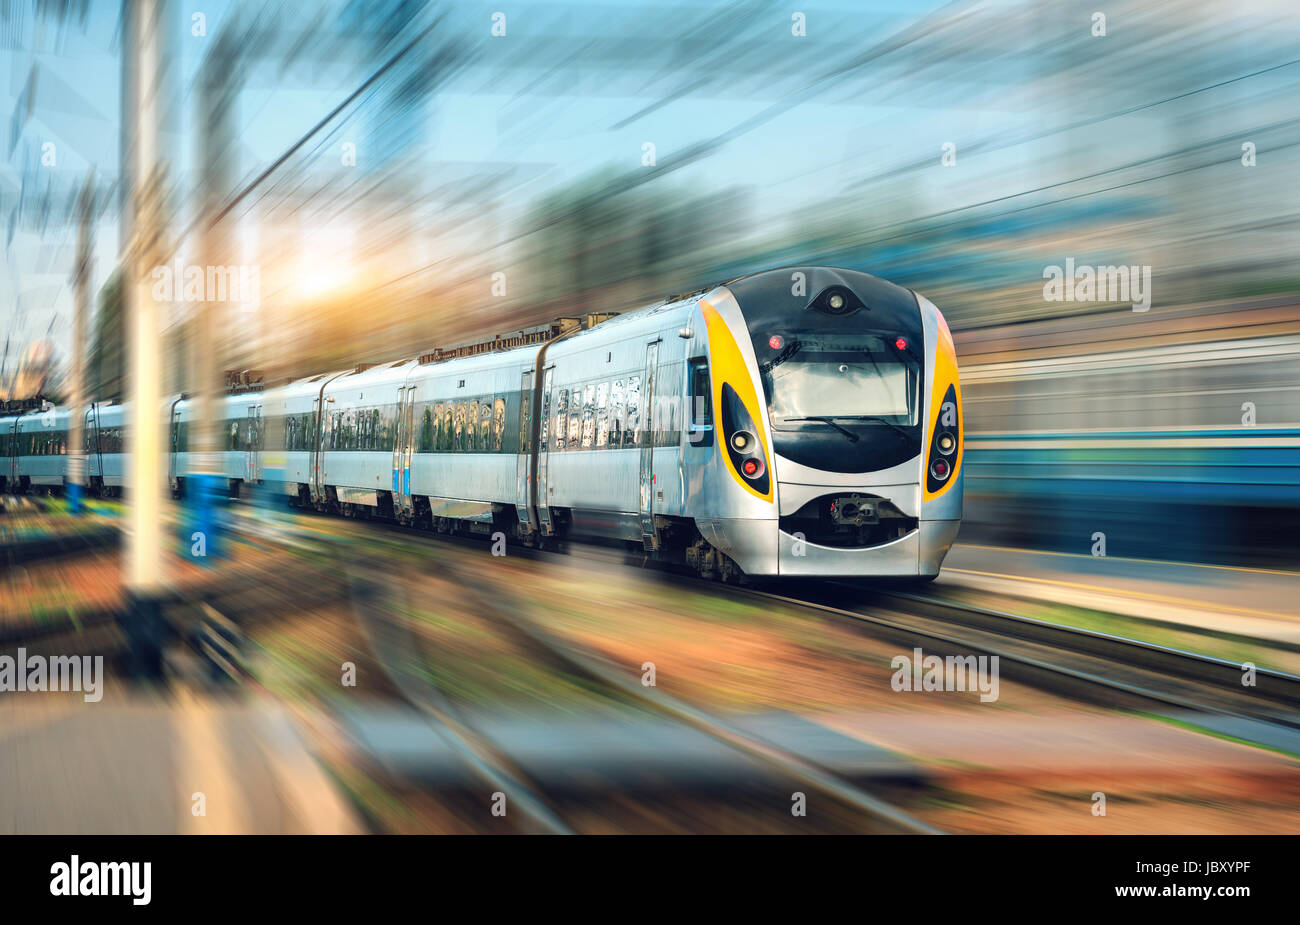 High-Speed-Zug in Bewegung am Bahnhof bei Sonnenuntergang. Moderne europäische intercity Zug auf dem Bahnsteig mit Motion-Blur-Effekt. Industri Stockfoto